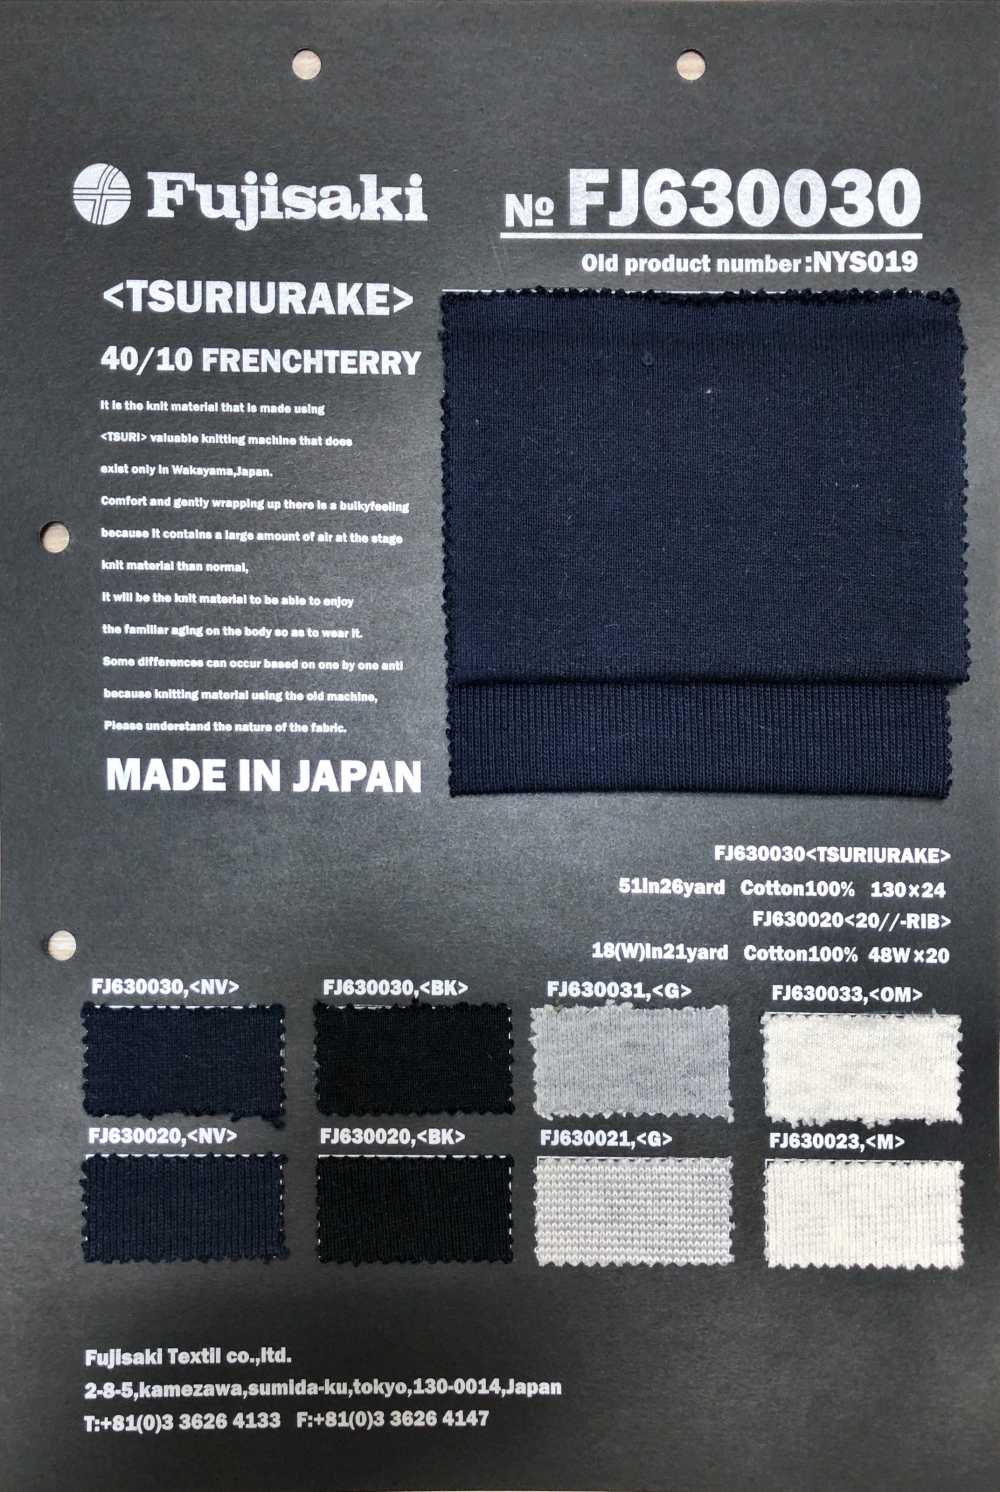 FJ630020 20//- Rib Knit[Textile / Fabric] Fujisaki Textile